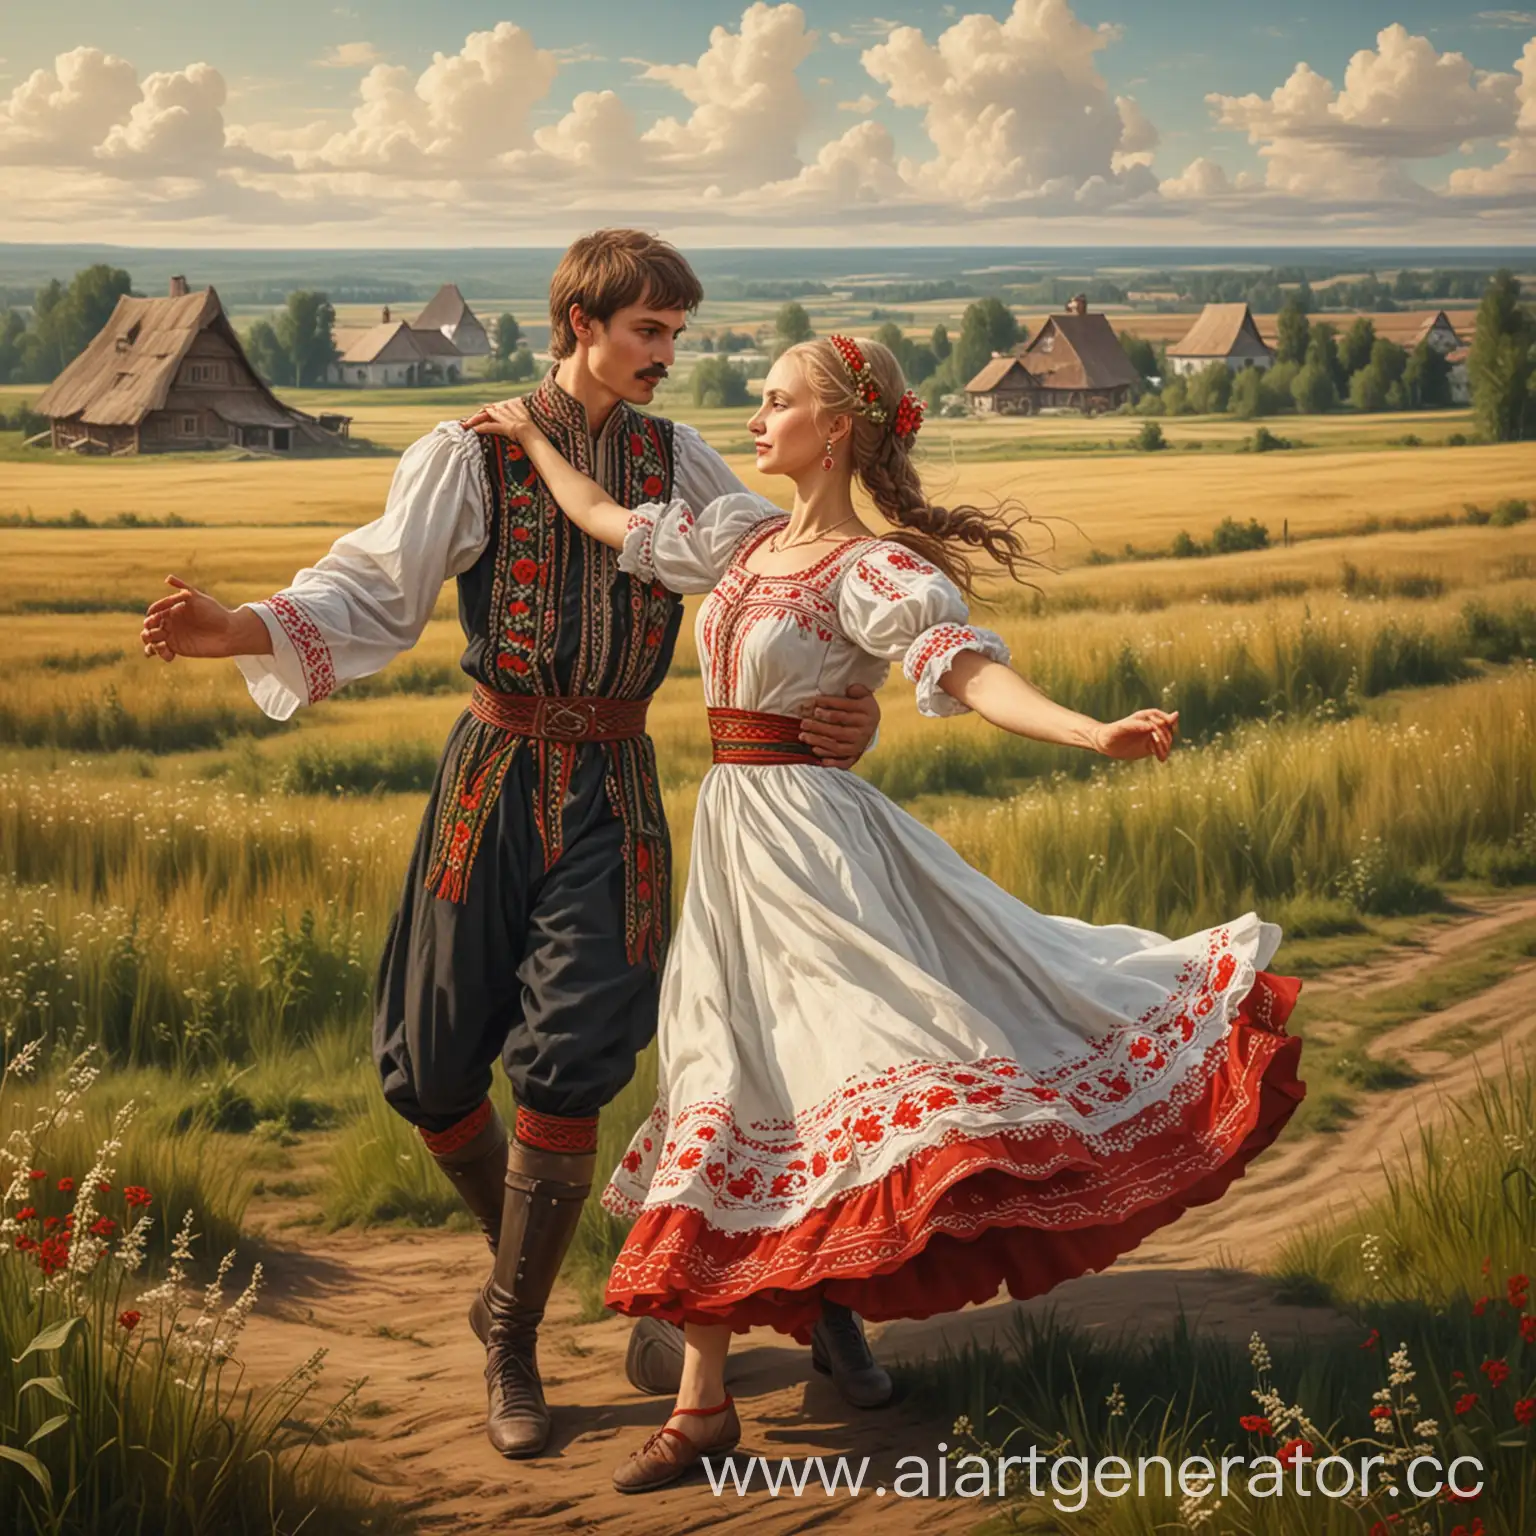 Belarusian-Folk-Dance-in-Fields-Men-and-Women-Dancing-in-FairyTale-Setting